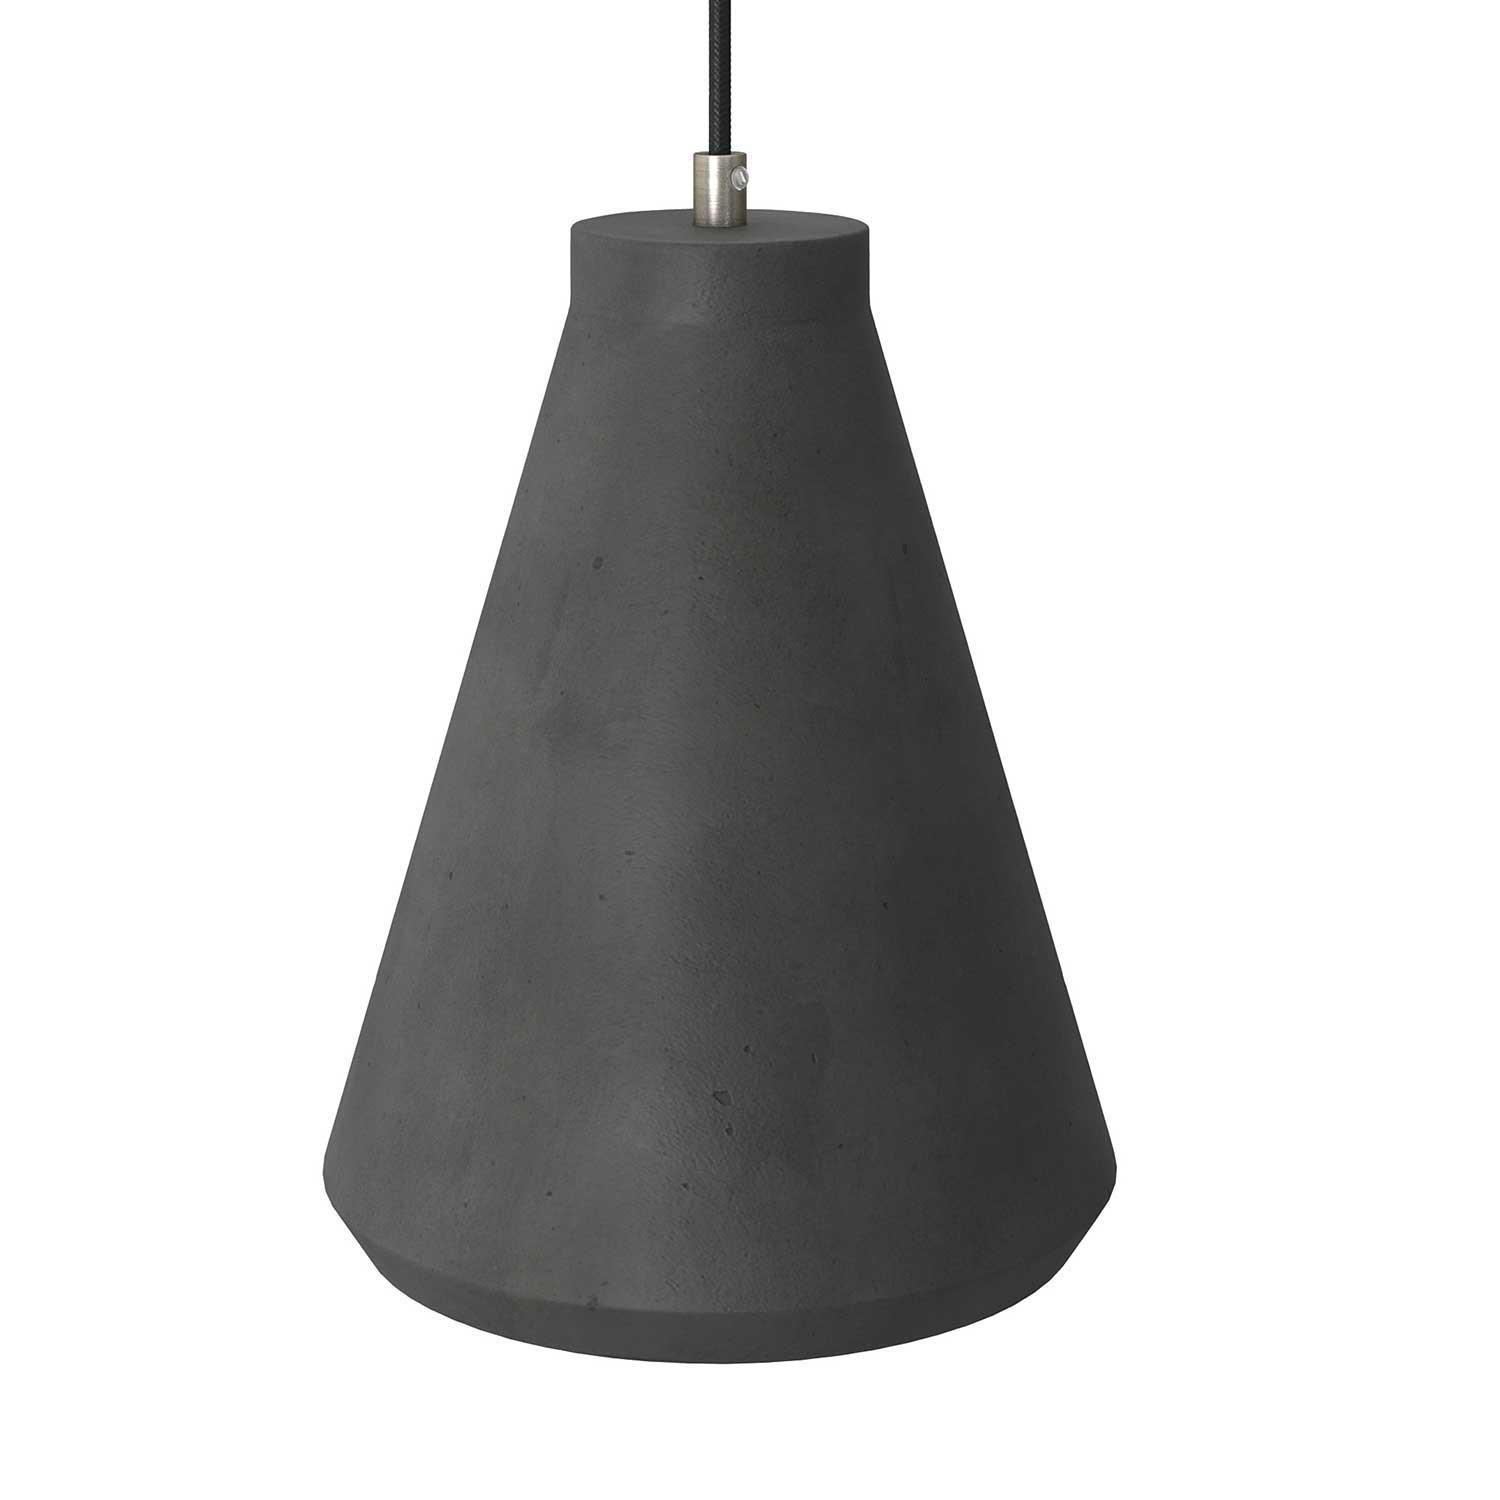 Pendelleuchte mit Textilkabel, trichterförmigem Lampenschirm aus Zement und Metall-Zubehör - Hergestellt in Italien